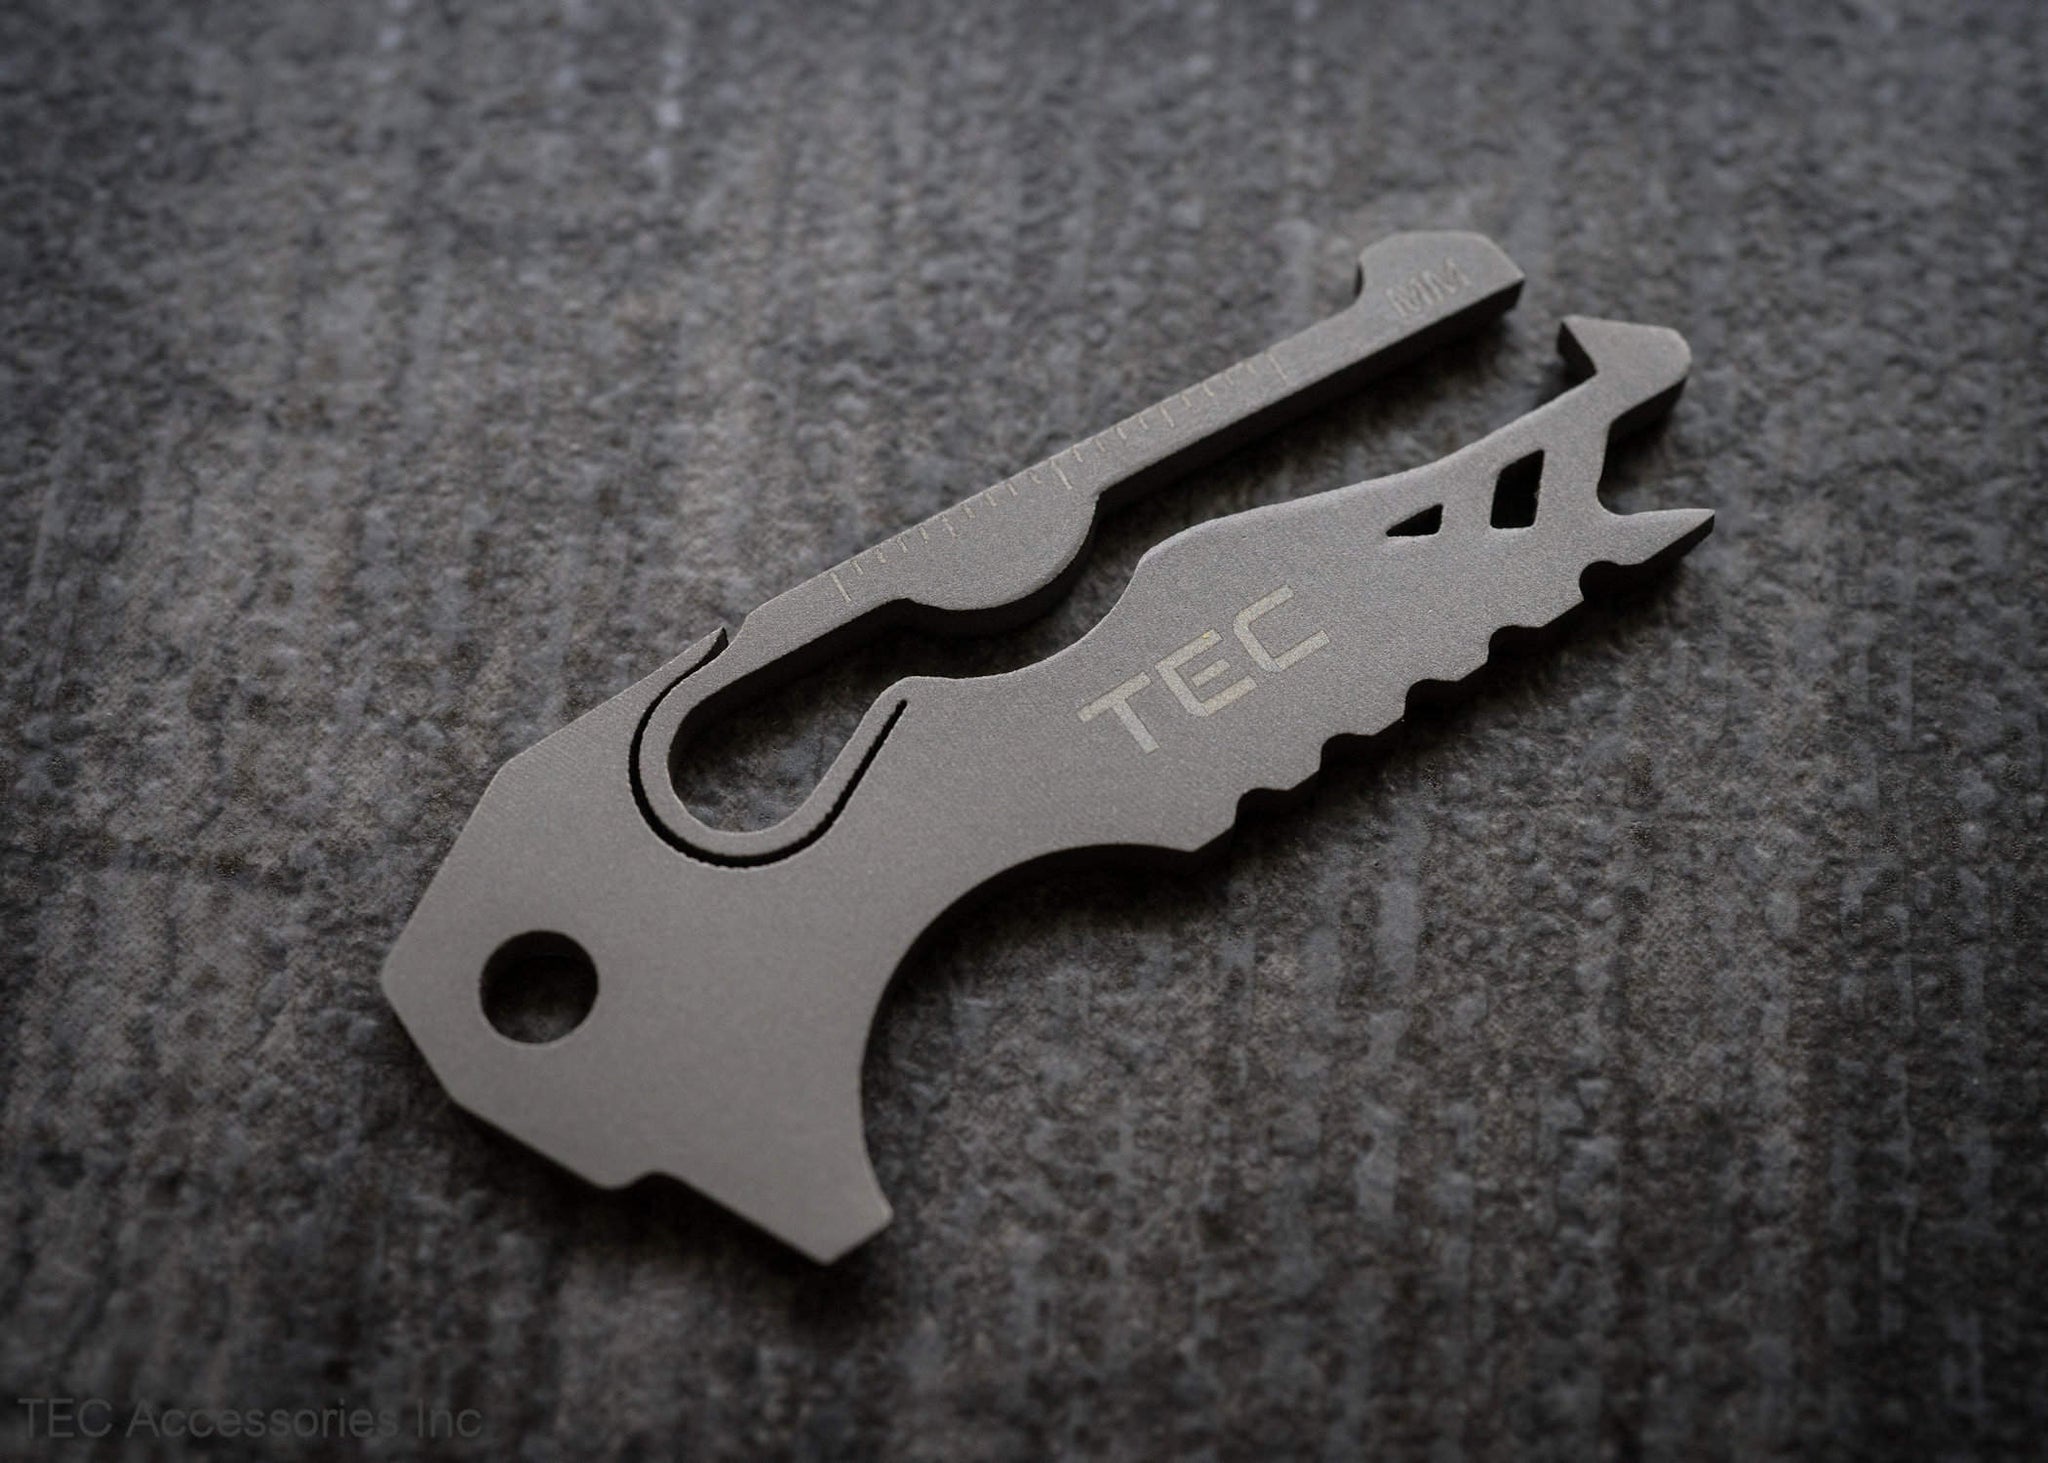 TEC HIT 500023 - Sac d'outils avec rabat et poignée rigide - Avec 23 pièces  - Noir / Rouge